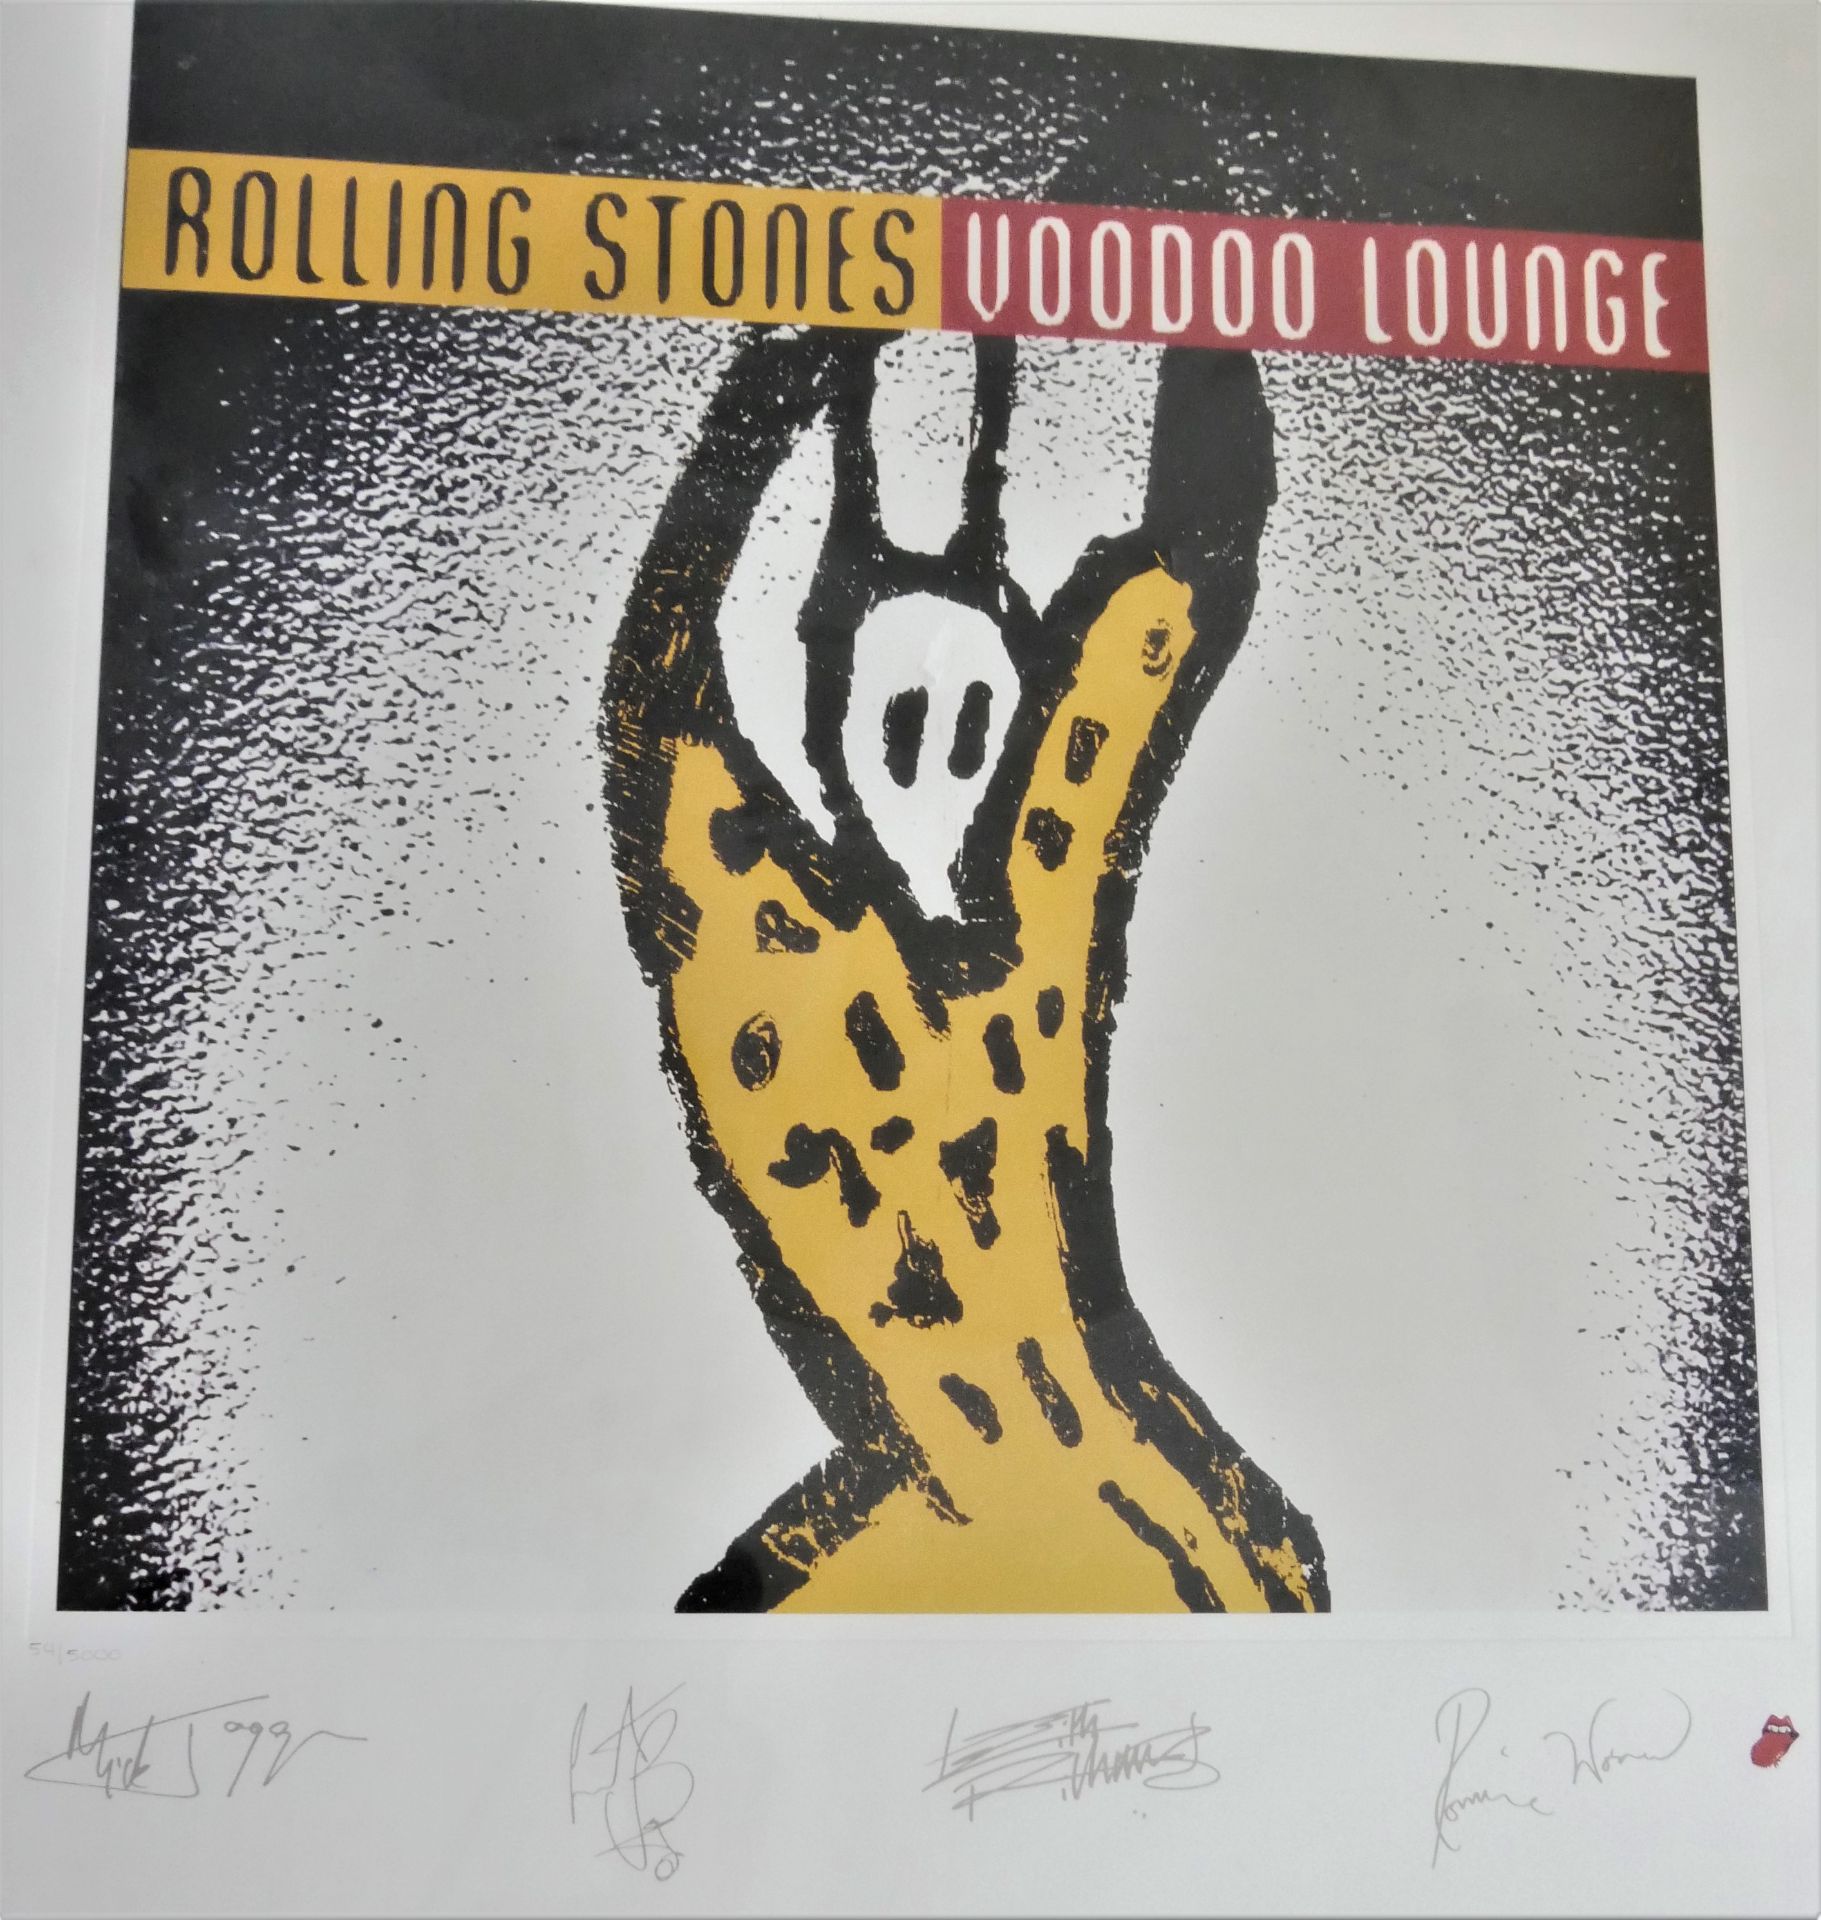 seltene Rolling Stones "Voodoo Lounge", signiert. Lithographie Rar Kunstdruck. Hier Nr. 54/5000. - Bild 3 aus 4